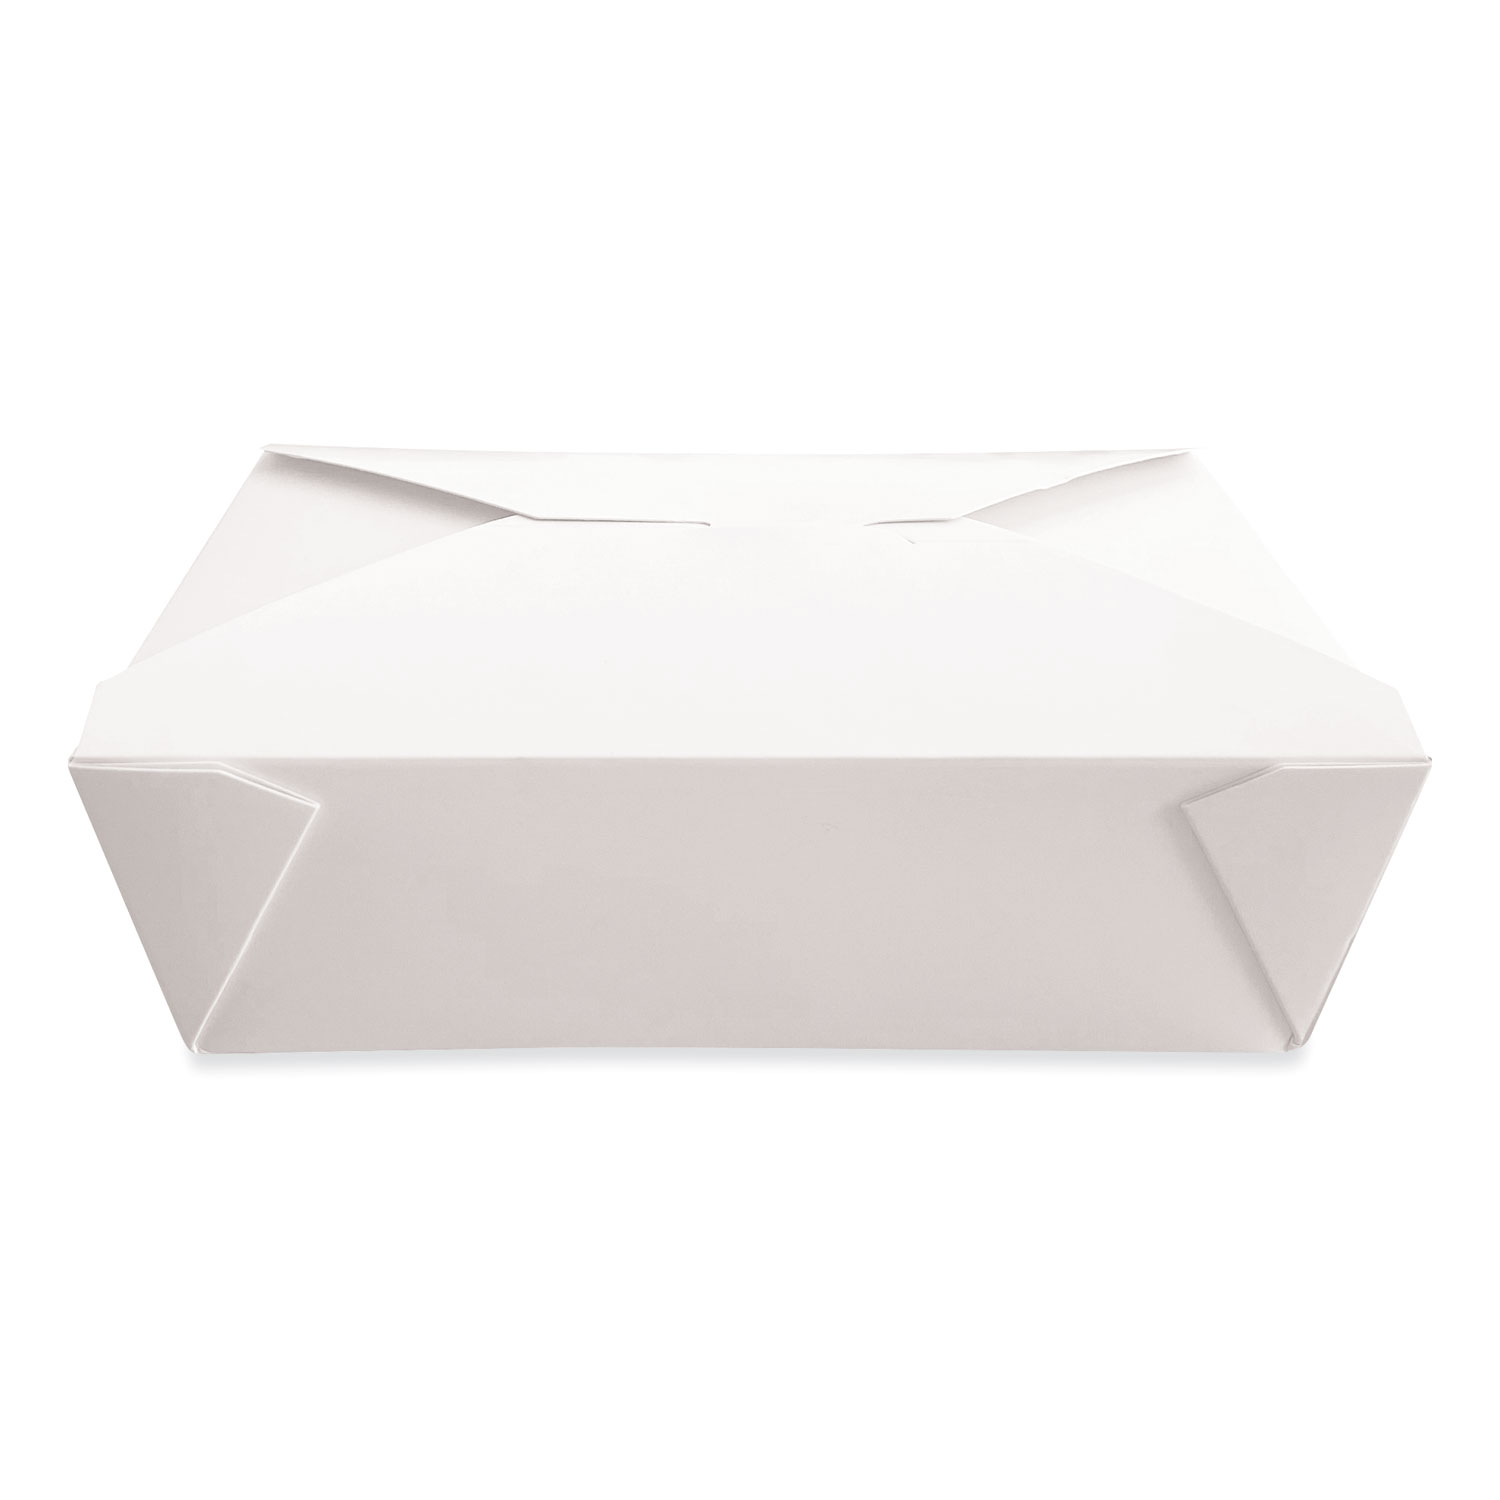 Dura Takeout Containers, 7.75 x 5.51 x 2.48, White, 200/Carton